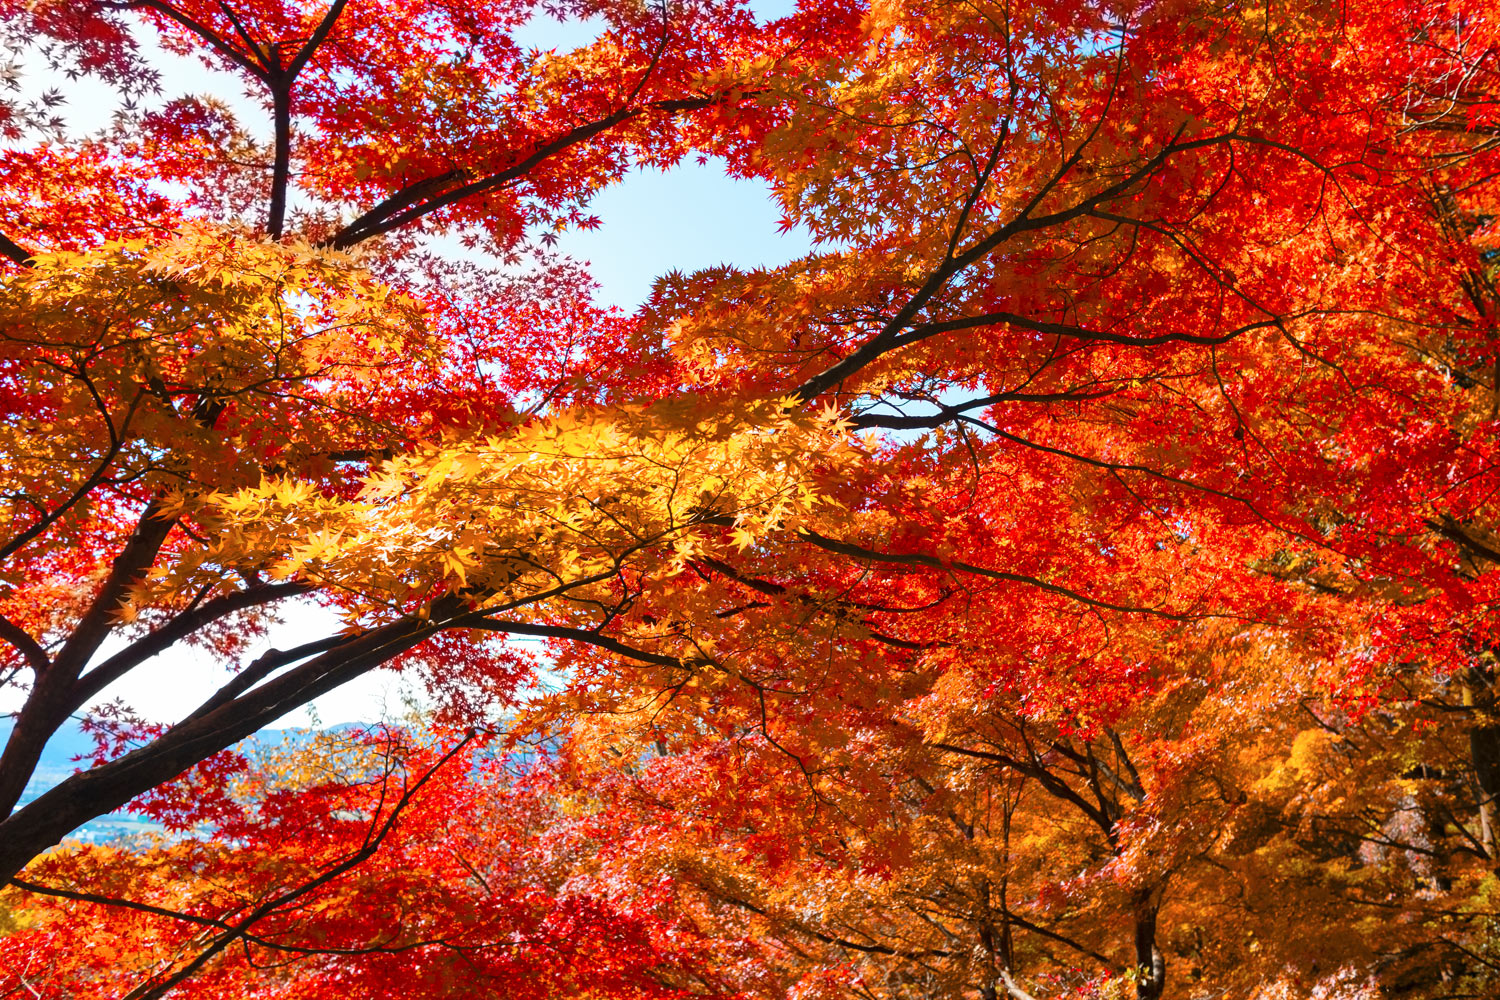 越前の紅葉の名所、鯖江市の西山公園